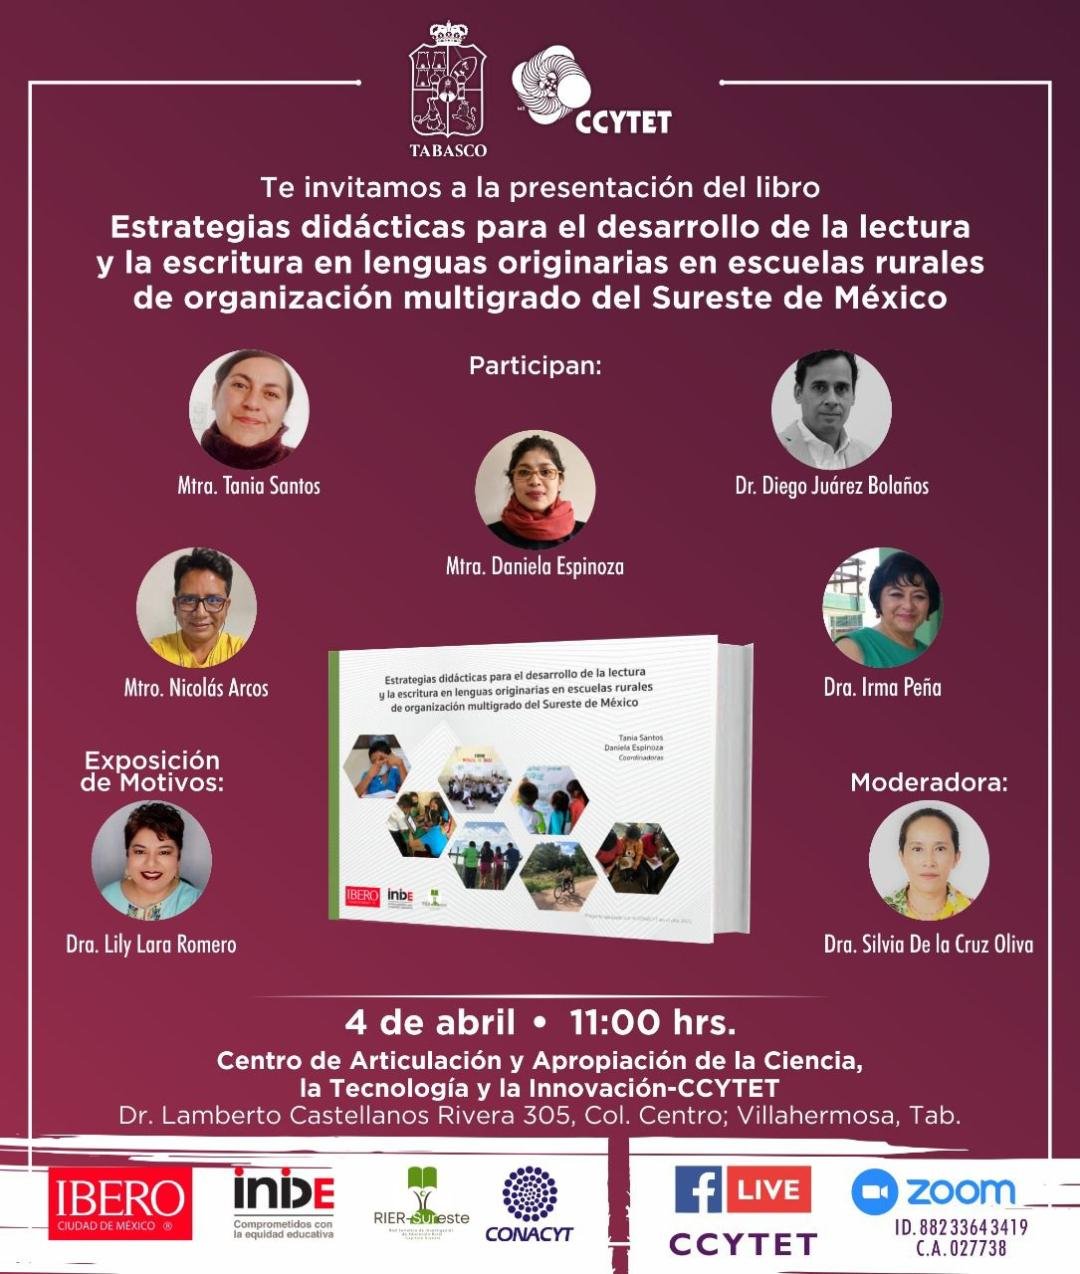 Presentación del libro: Estrategias didácticas para el desarrollo de la lectura y la escritura en lenguas originarias en escuelas rurales de organización multigrado del Sureste de México